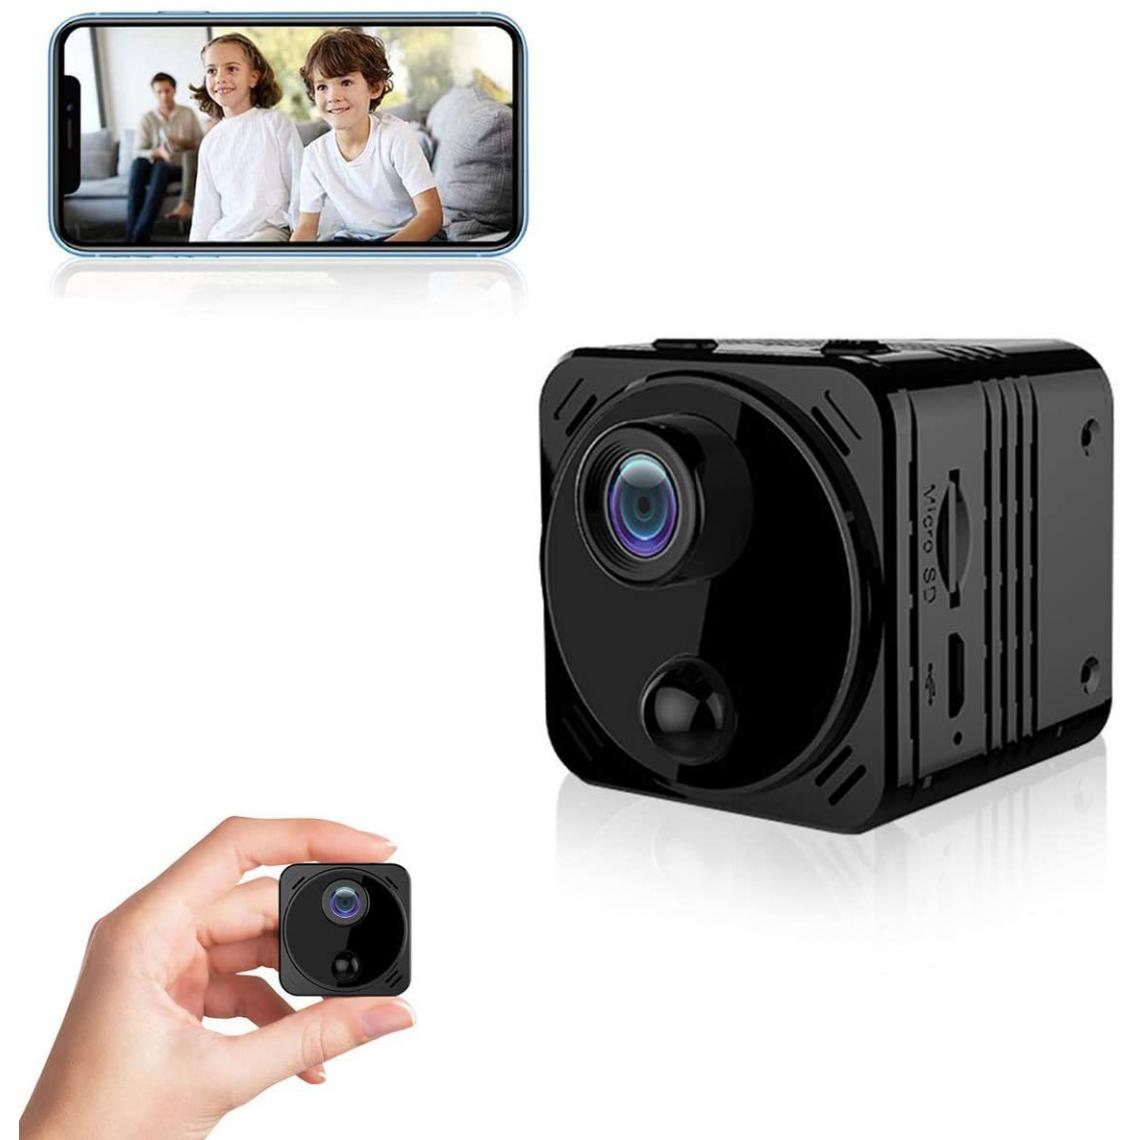 Chrono - Caméra espion Mini caméra cachée 4K WiFi 1080P Caméra de sécurité à domicile avec application téléphonique, coupure infrarouge, vision nocturne, caméra nounou/détection de mouvement de caméra(Noir) - Autres accessoires smartphone